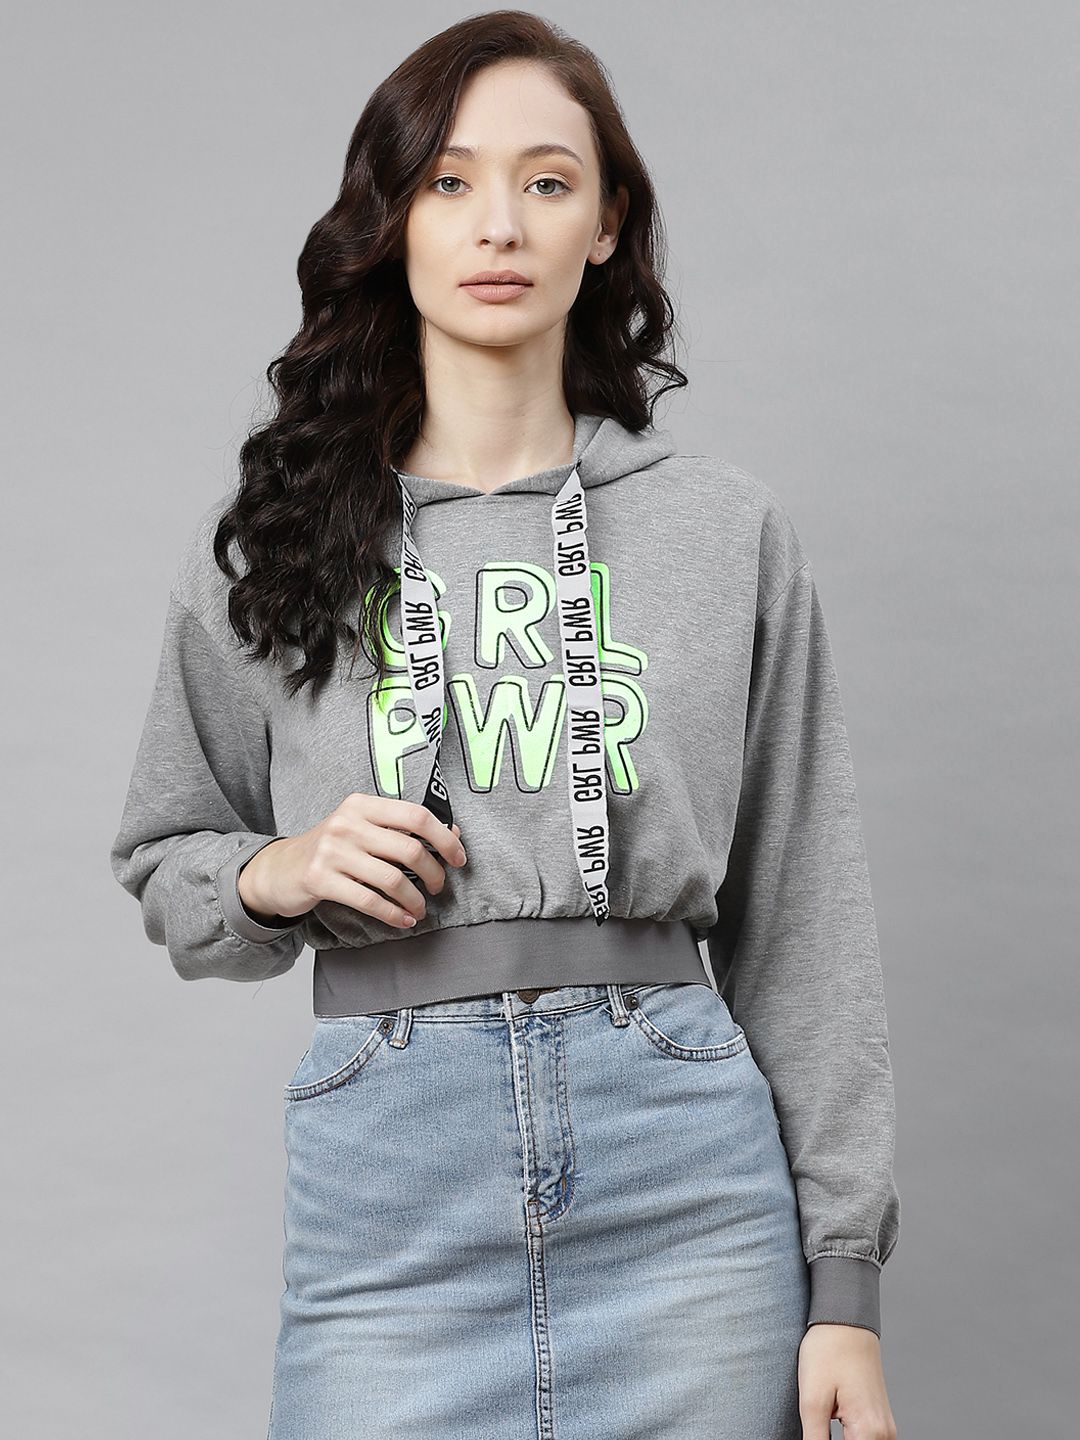 Hubberholme Women Grey Melange & Green Printed Hooded Sweatshirt Price in India